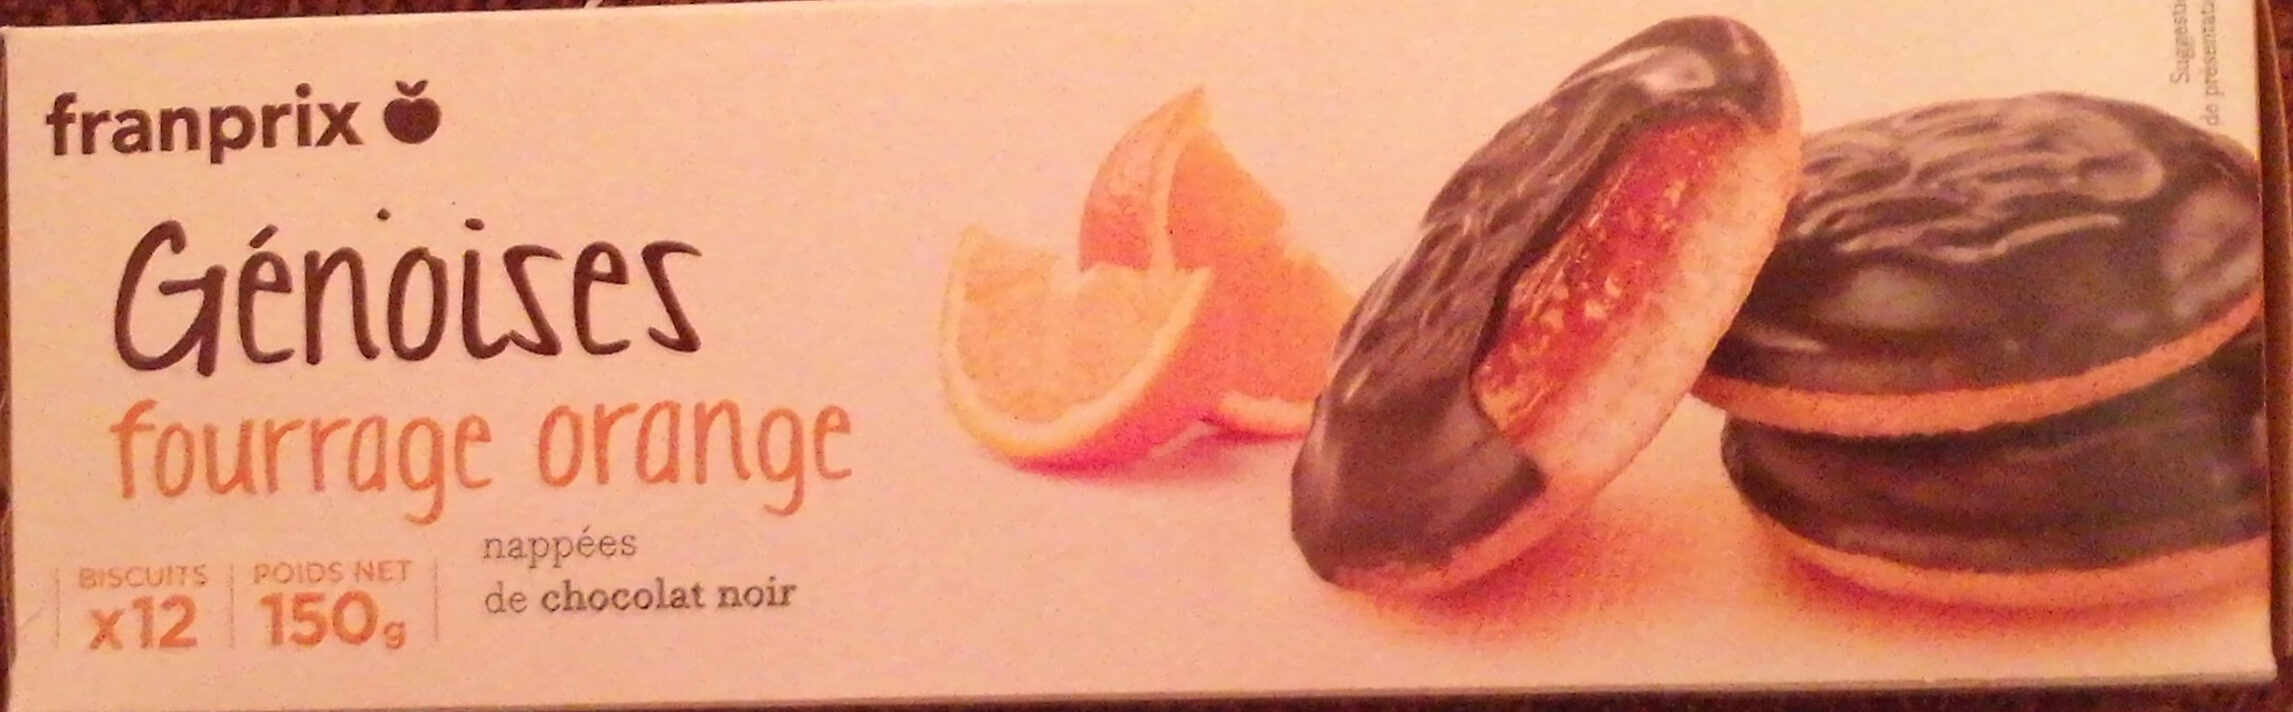 Génoises fourrage orange - Produit